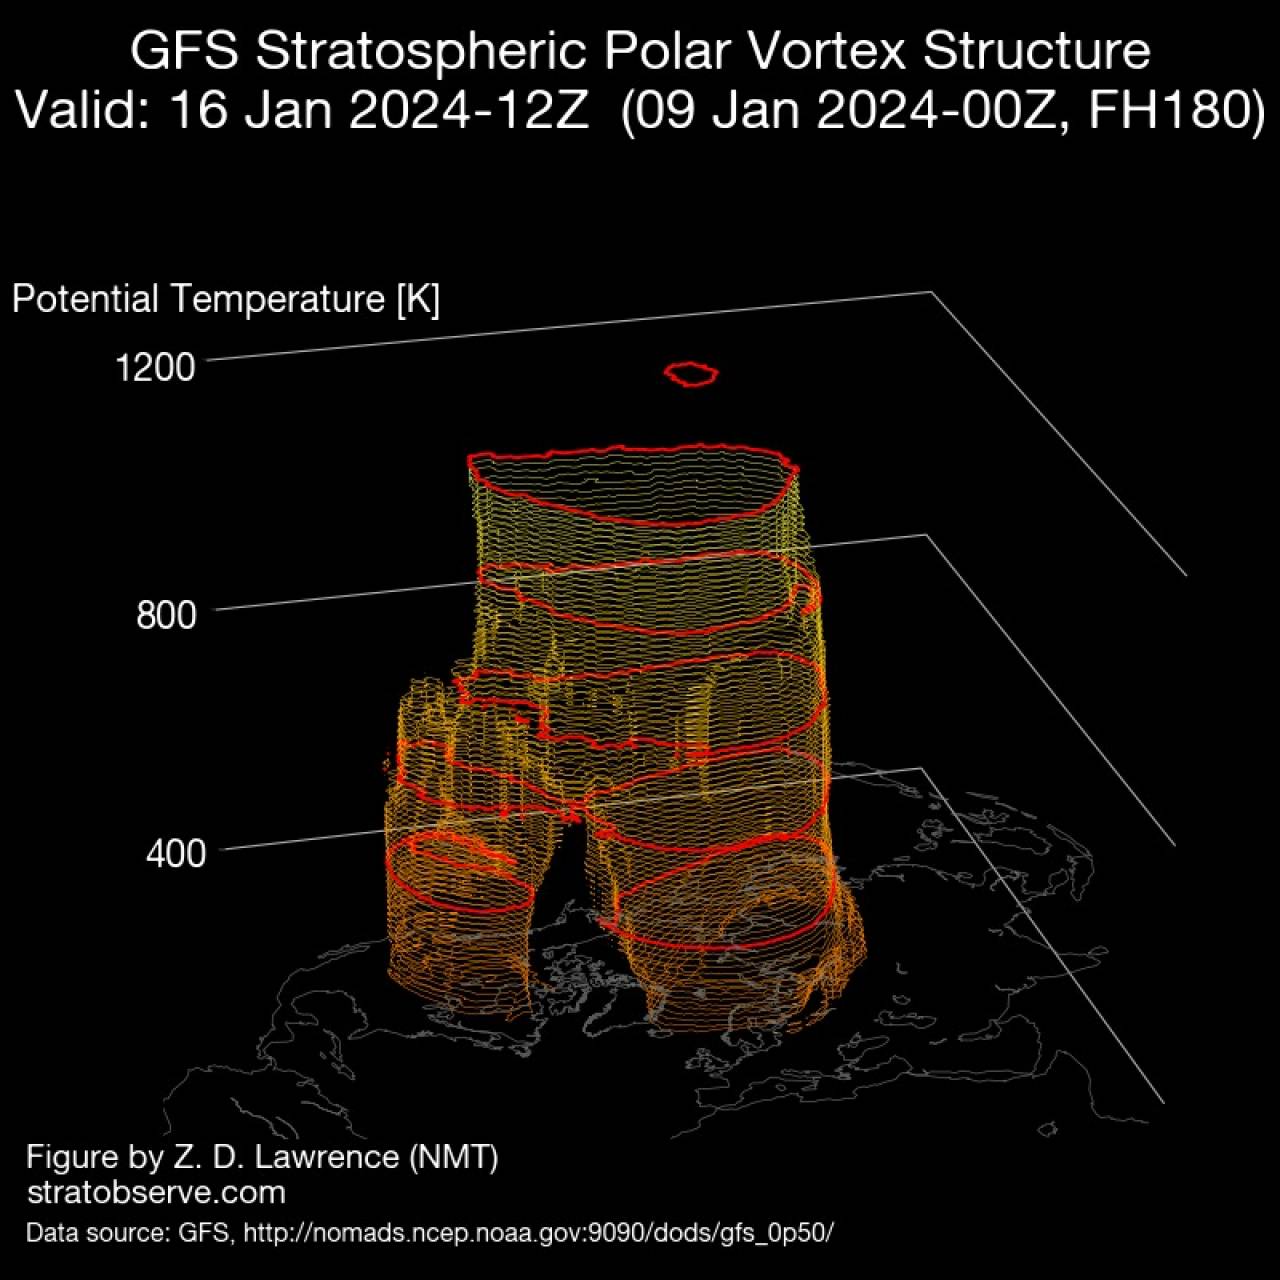 vortice polare in 3D fonte stratobserve